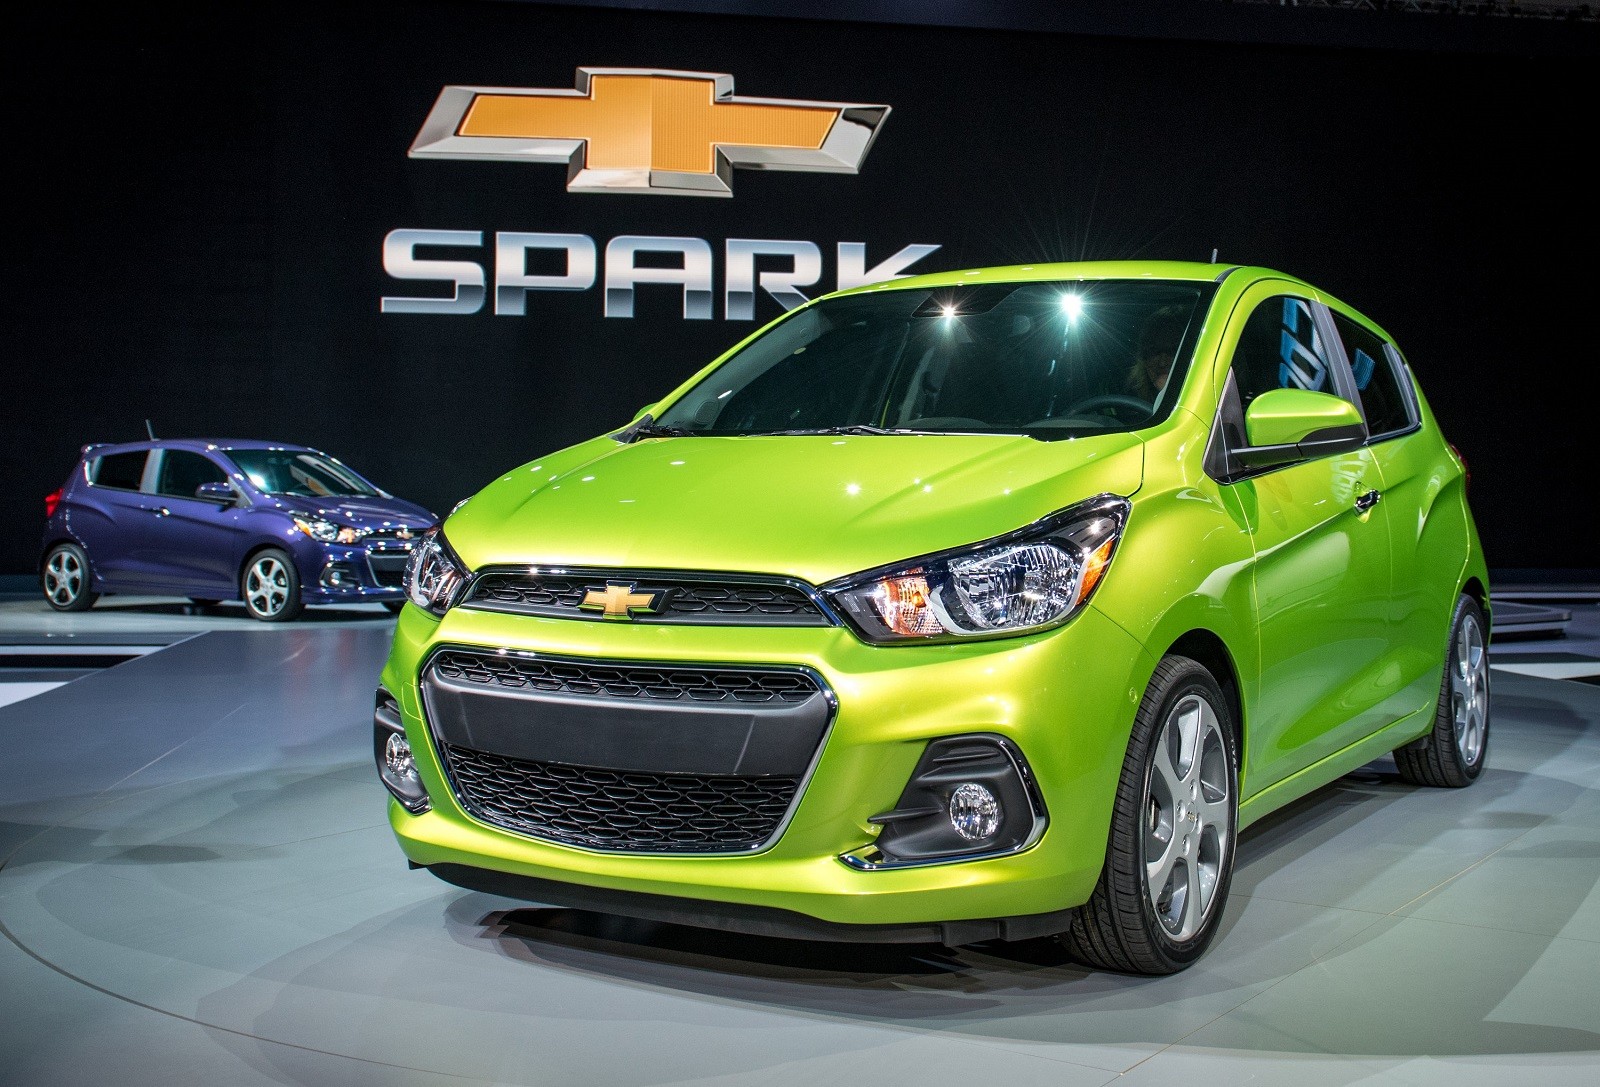 Ngoài việc Colorado giảm giá, một động thái khá lạ của Chevrolet khi tăng giá bán lẻ đối với hai mẫu Spark và Orlando.